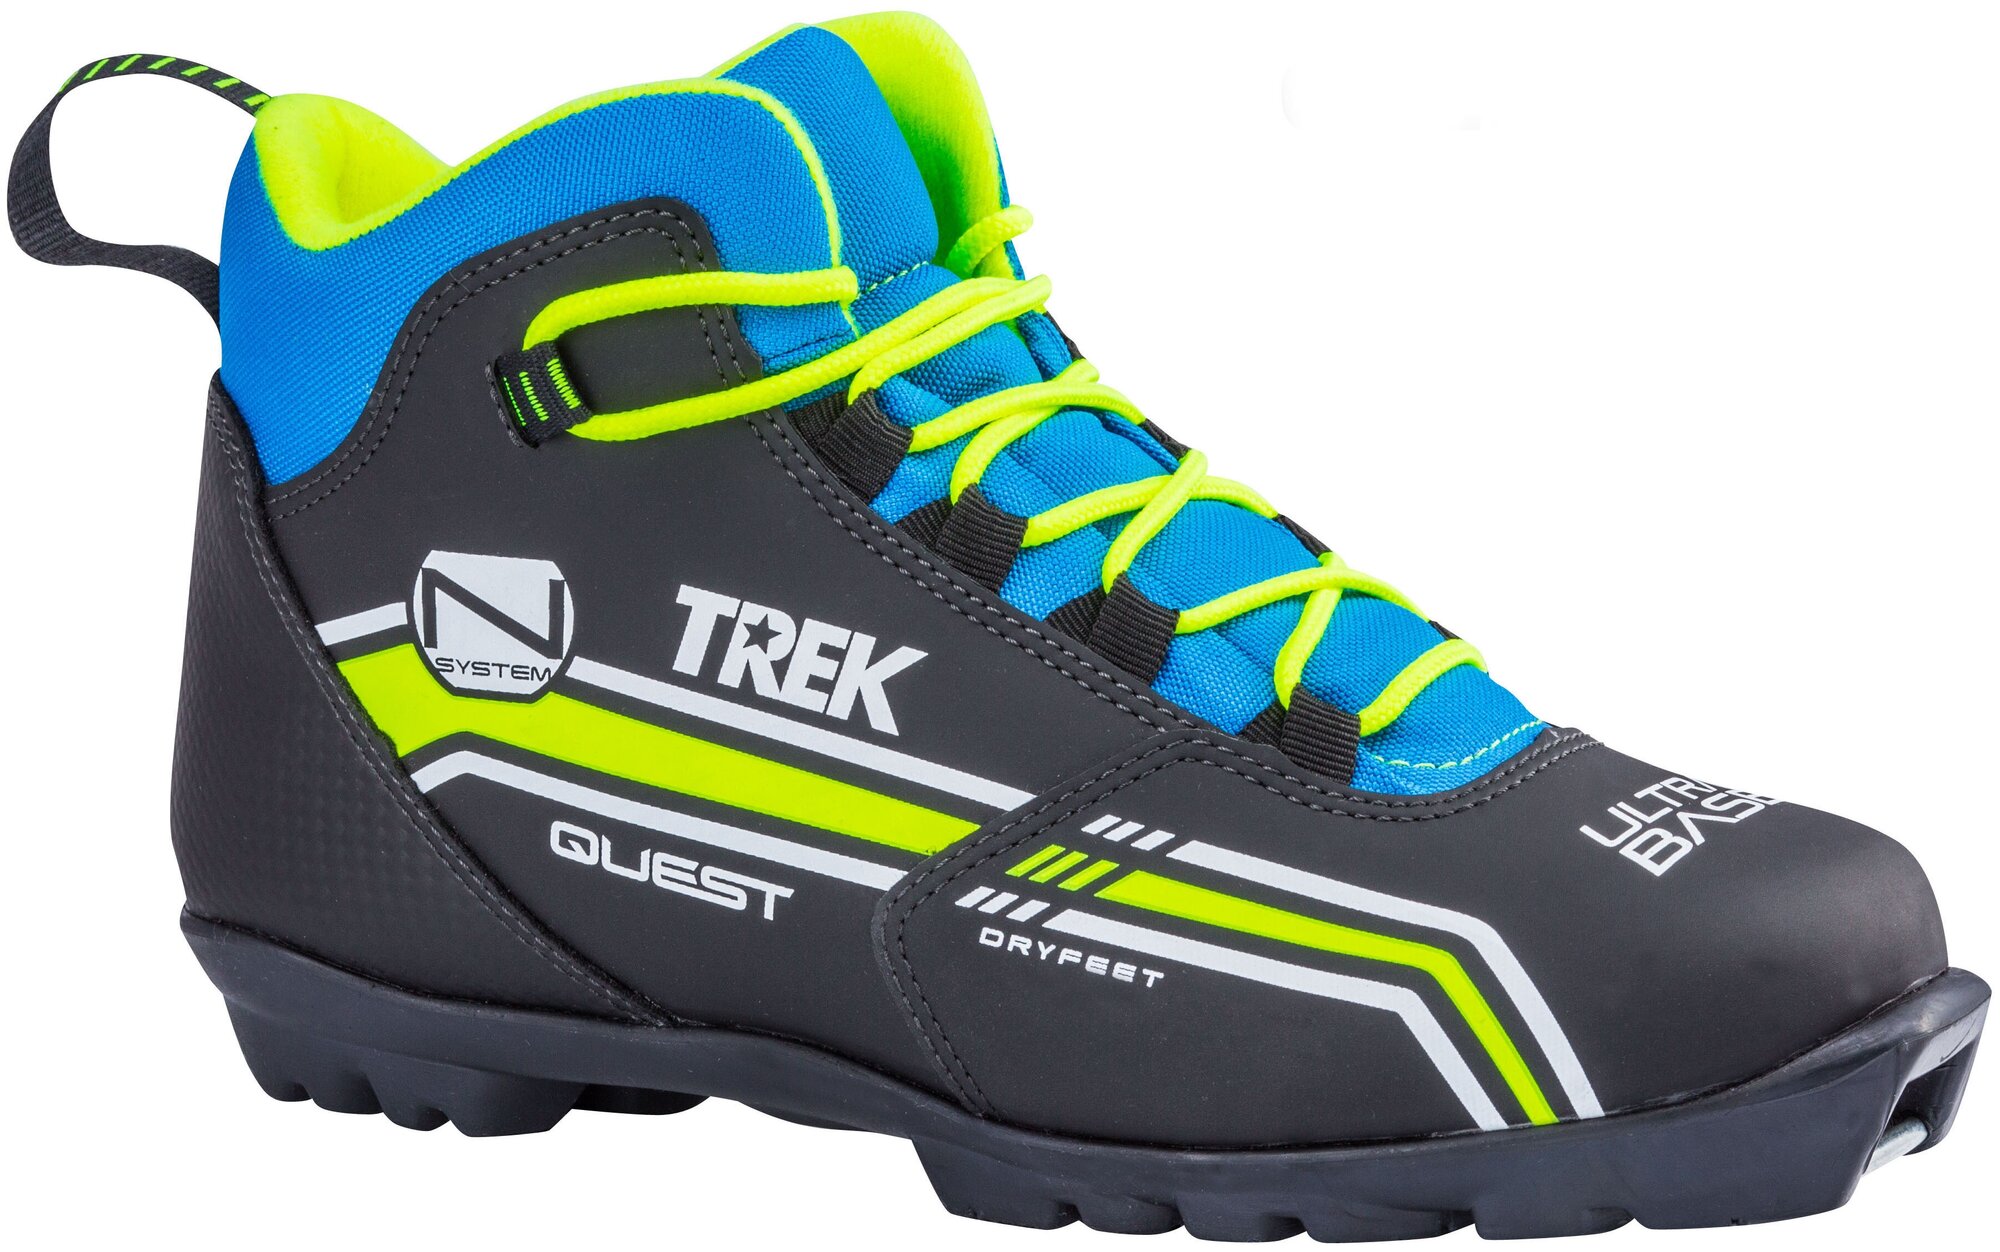 Ботинки лыжные NNN TREK Quest 1 черные/логотип лайм неон размер RU41 EU42 CM26,5